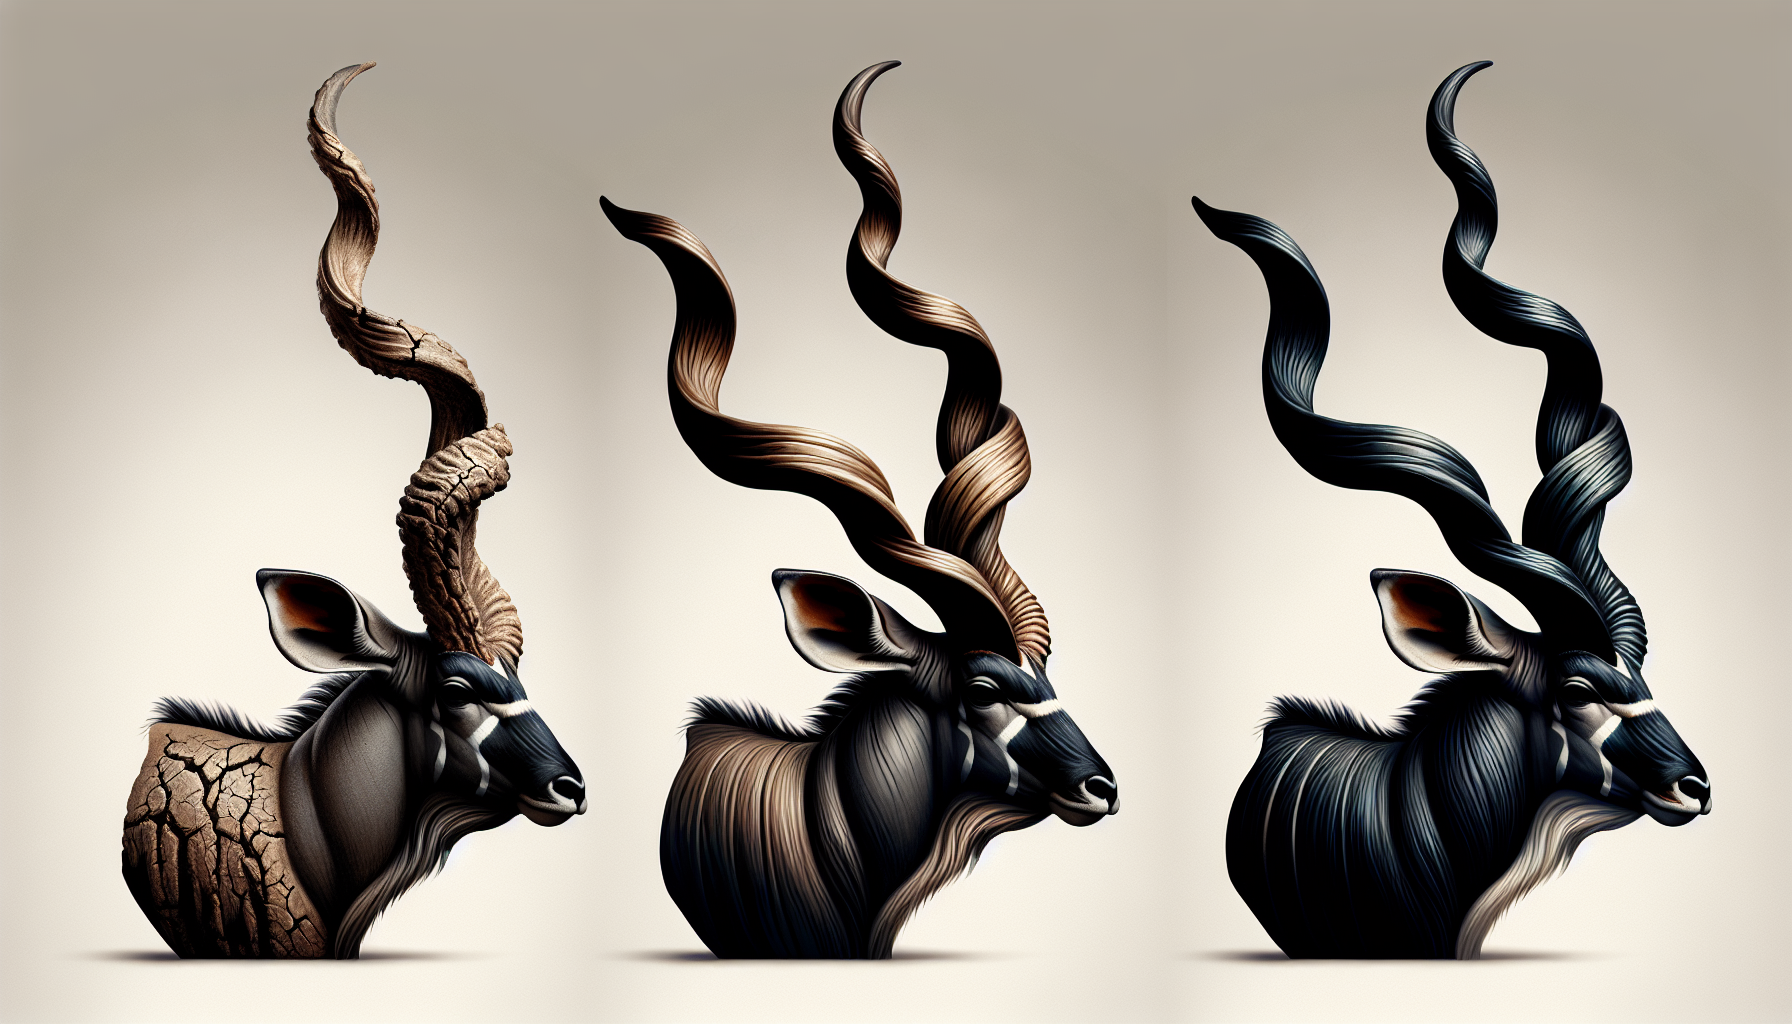 Kudu Horns Wholesale | Artistic illustration of polished kudu horns